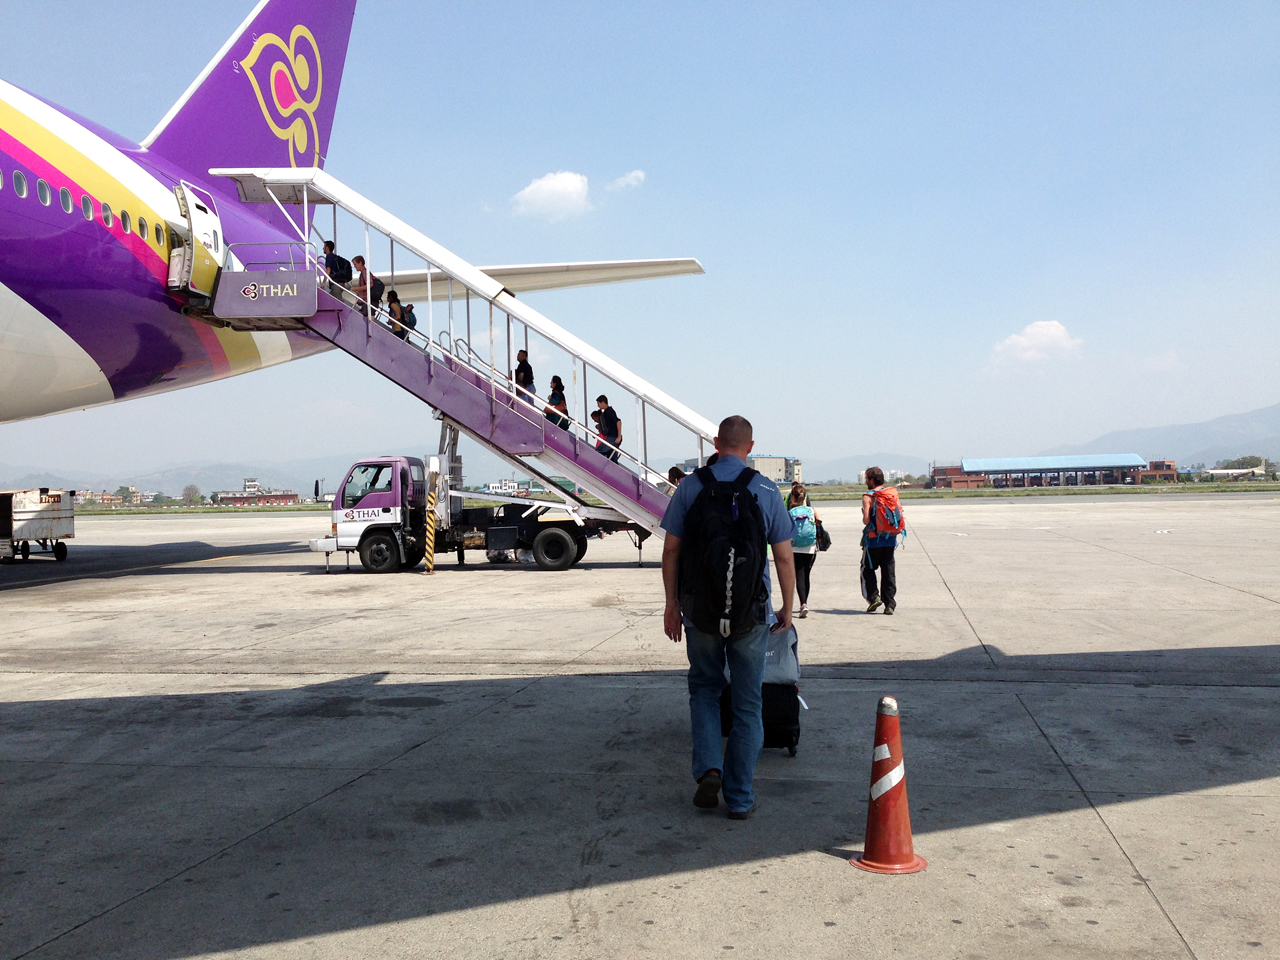 네팔 갈 때 이용한 타이 항공. 방콕 스탑오버의 기쁨을 누리는 대신 수십 번의 파이널콜을 견뎌야 했다.